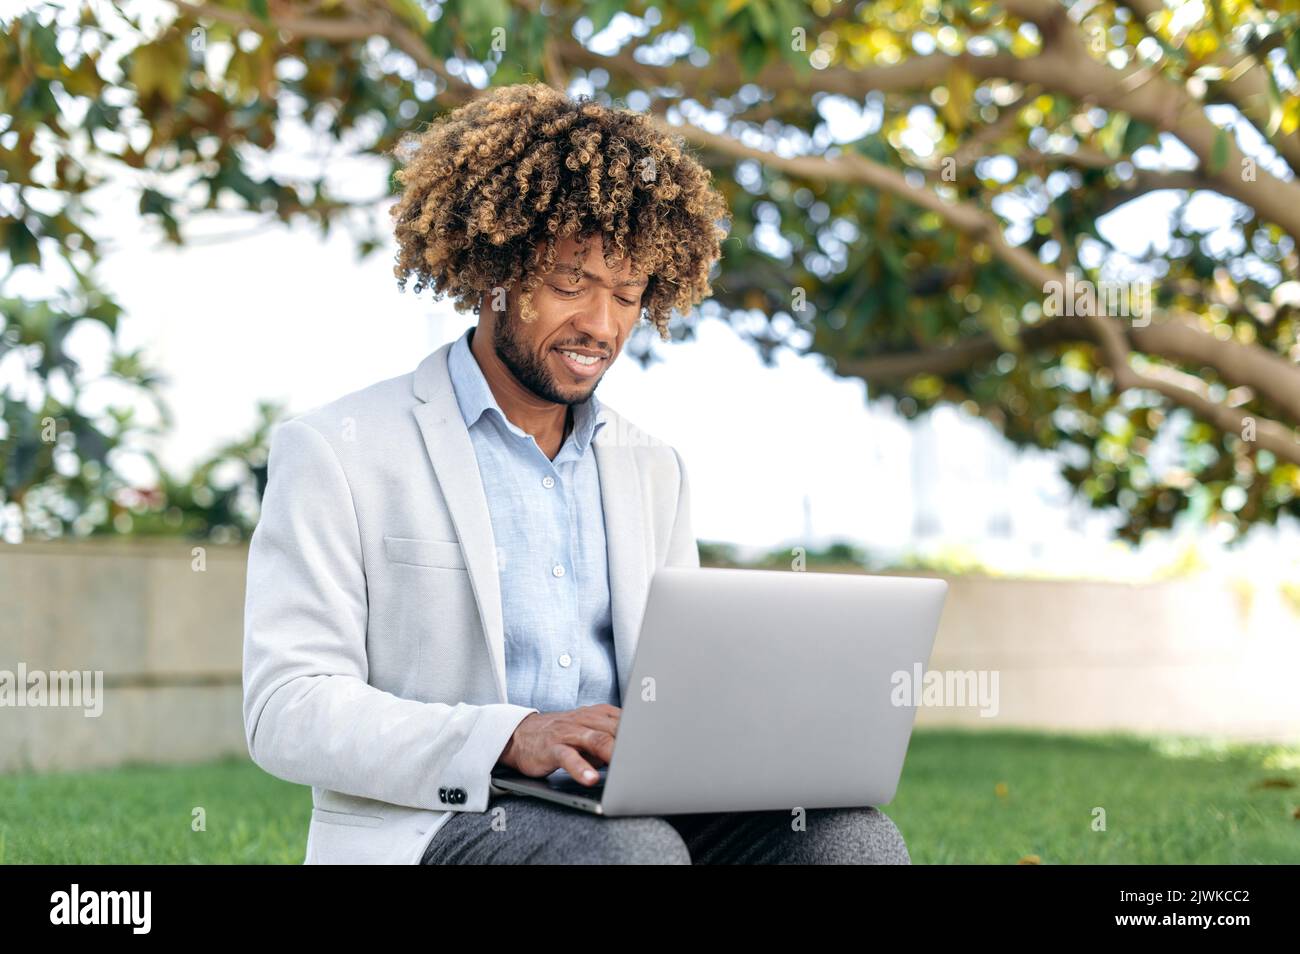 Positive smart erfolgreichen brasilianischen oder latino lockigen Mann, CEO, Programmierer, Content Manager, sitzen im Freien mit Laptop, arbeiten online an einem Projekt, Surfen im Internet, lächelnd glücklich Stockfoto